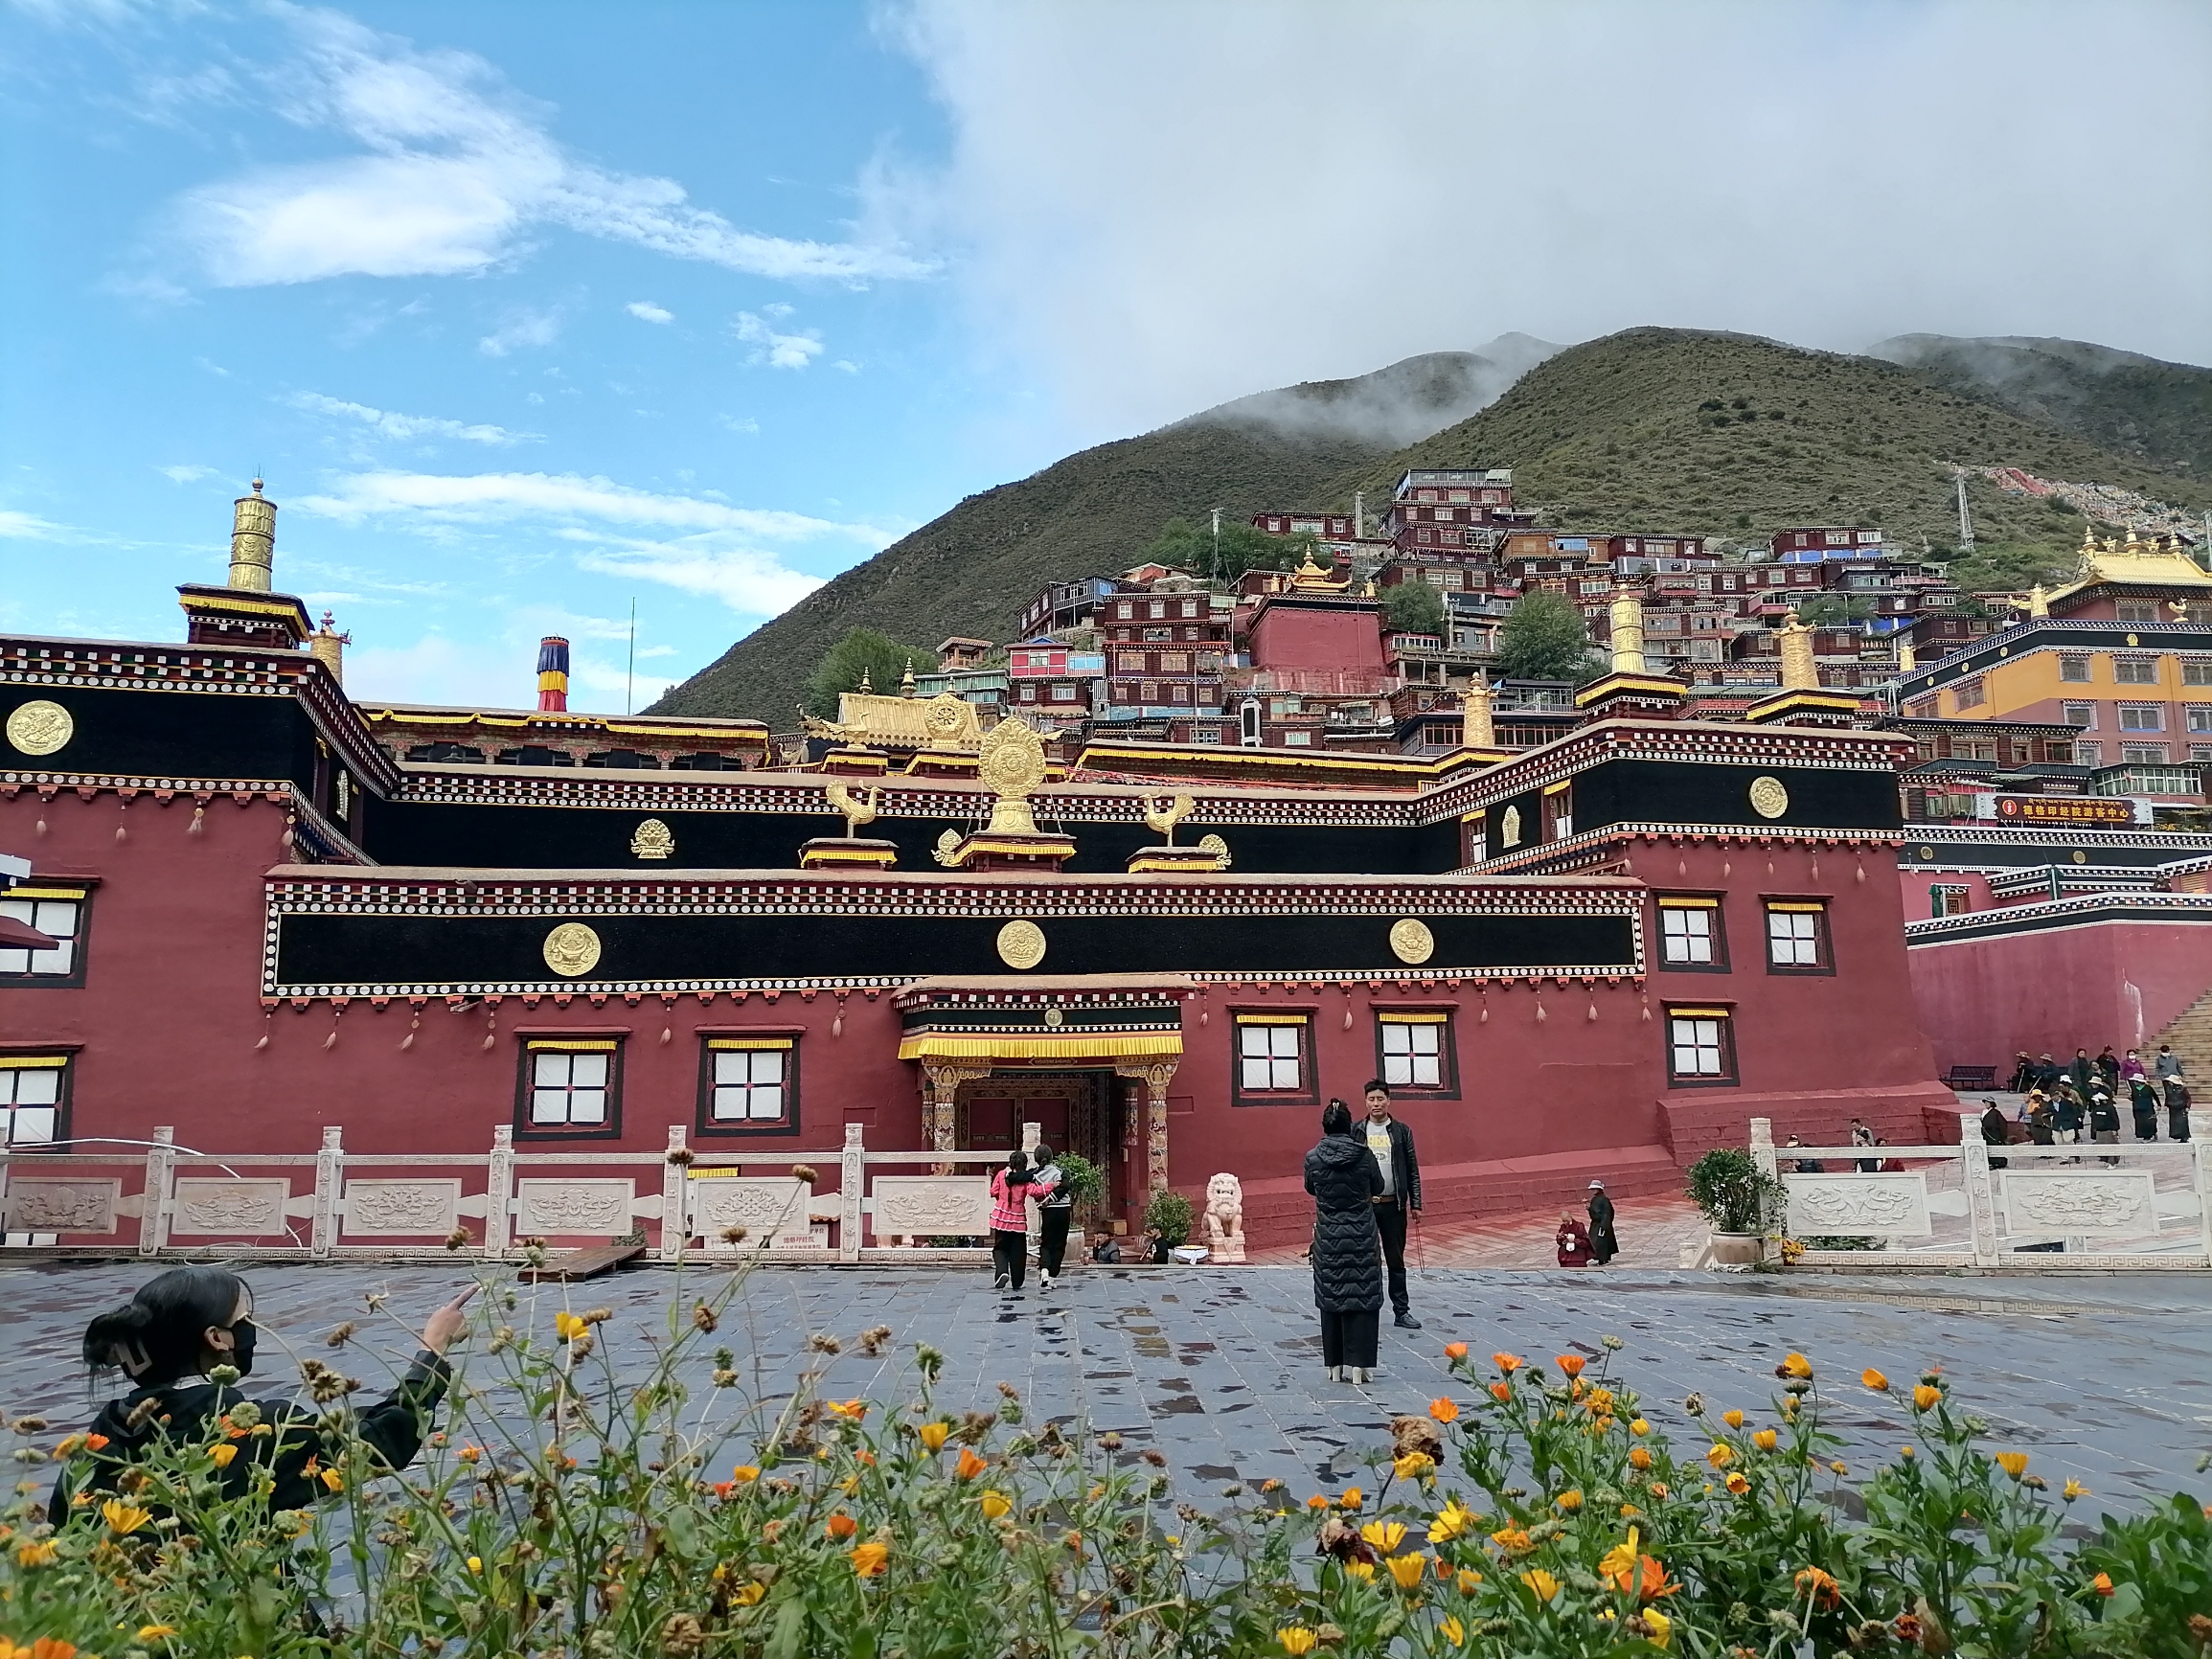 #旅行拍照不露脸 #发现旅途的色彩 德格印经院是康巴地区著名的宗教文化中心，这里地处川西北，与西藏江